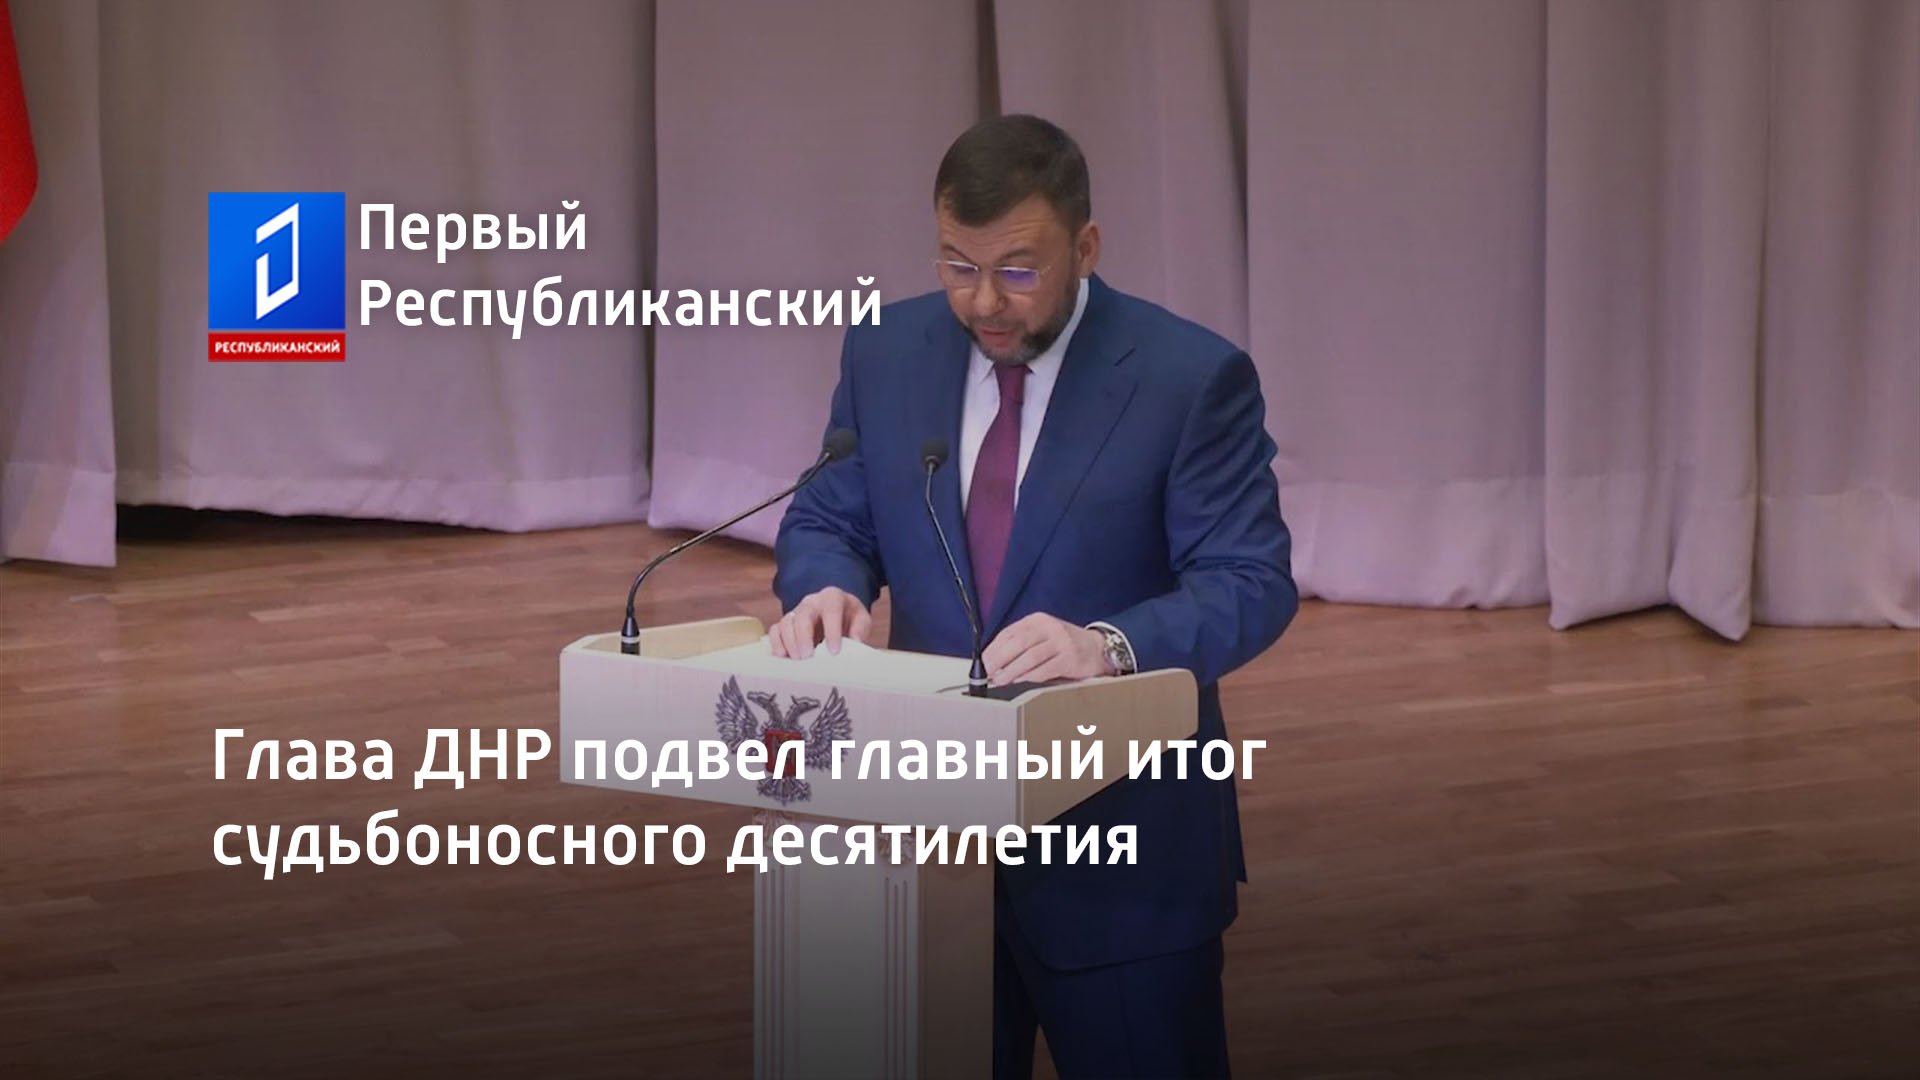 Глава ДНР подвел главный итог судьбоносного десятилетия